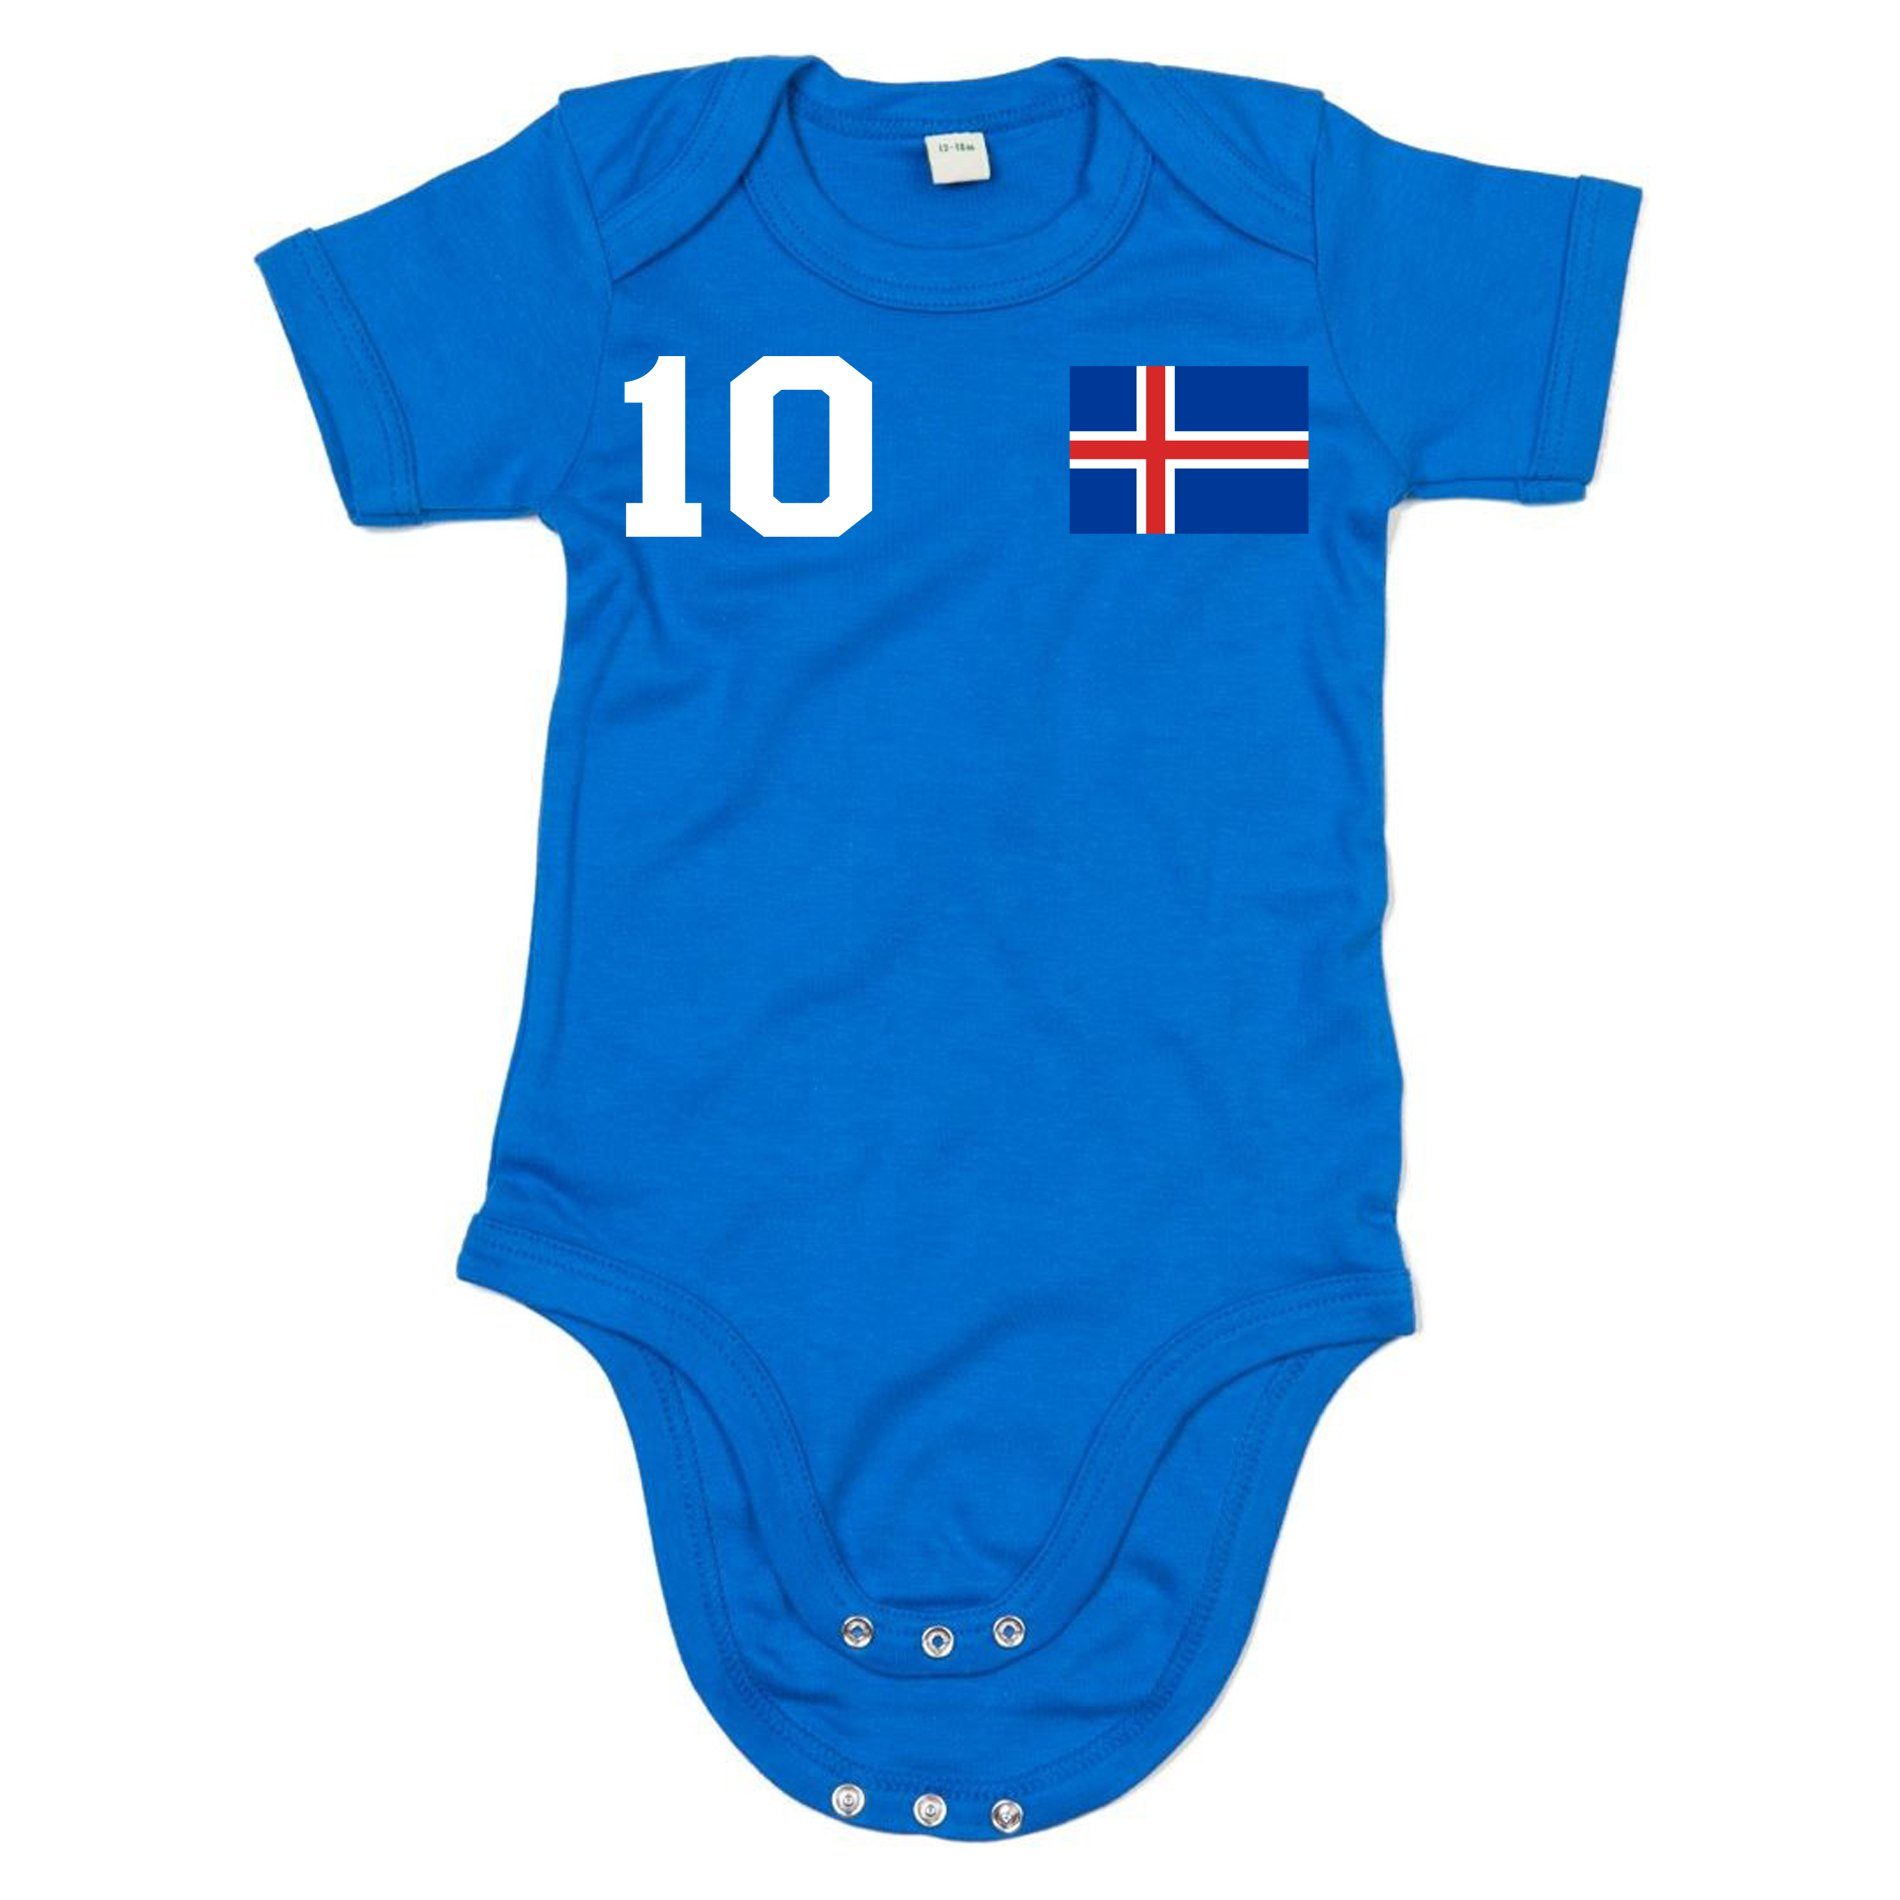 Trikot Island Meister & Weiss/Blau Blondie WM Handball Sport EM Iceland Kinder Fußball Brownie Strampler Baby